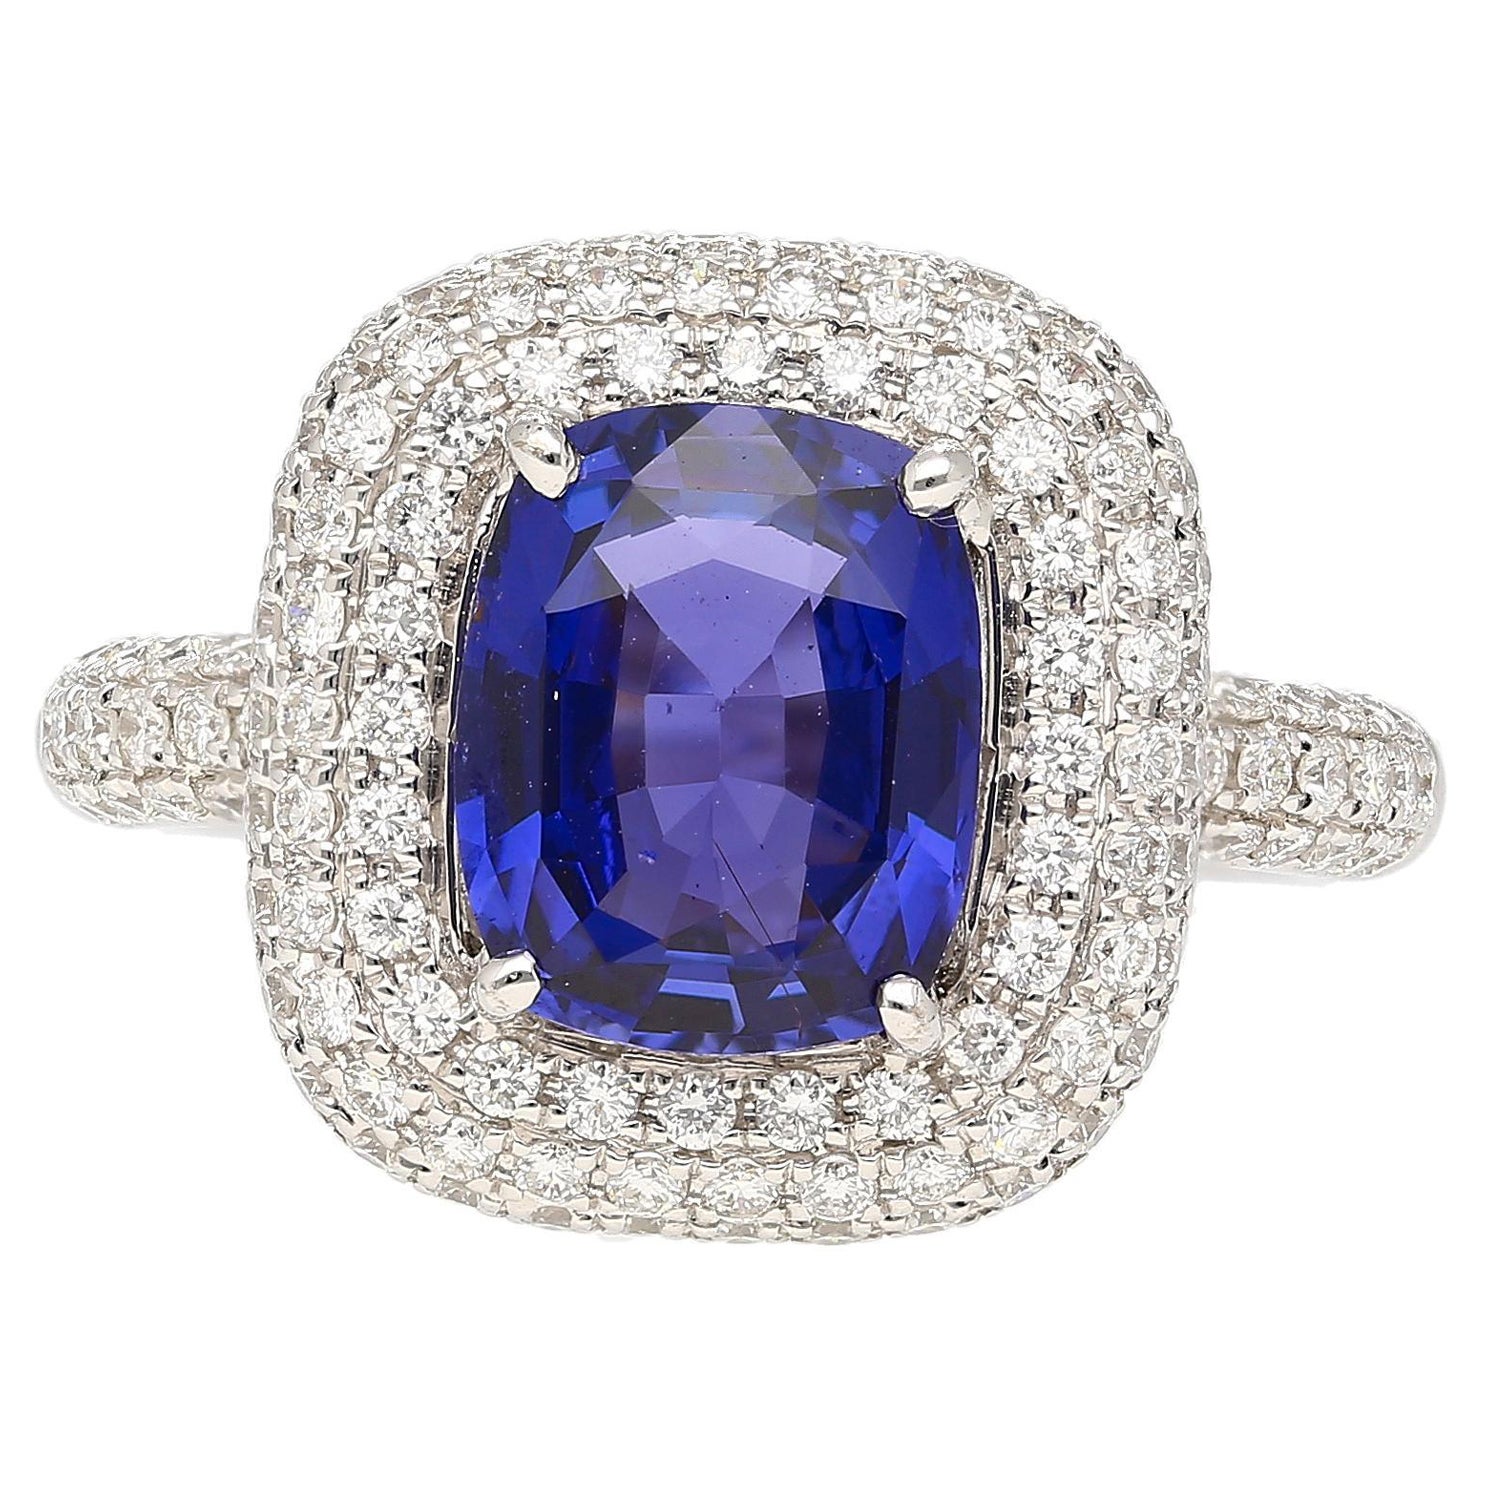 GIA-zertifizierter Ring mit unbehandeltem, violett-blauem Saphir 3,25 Karat